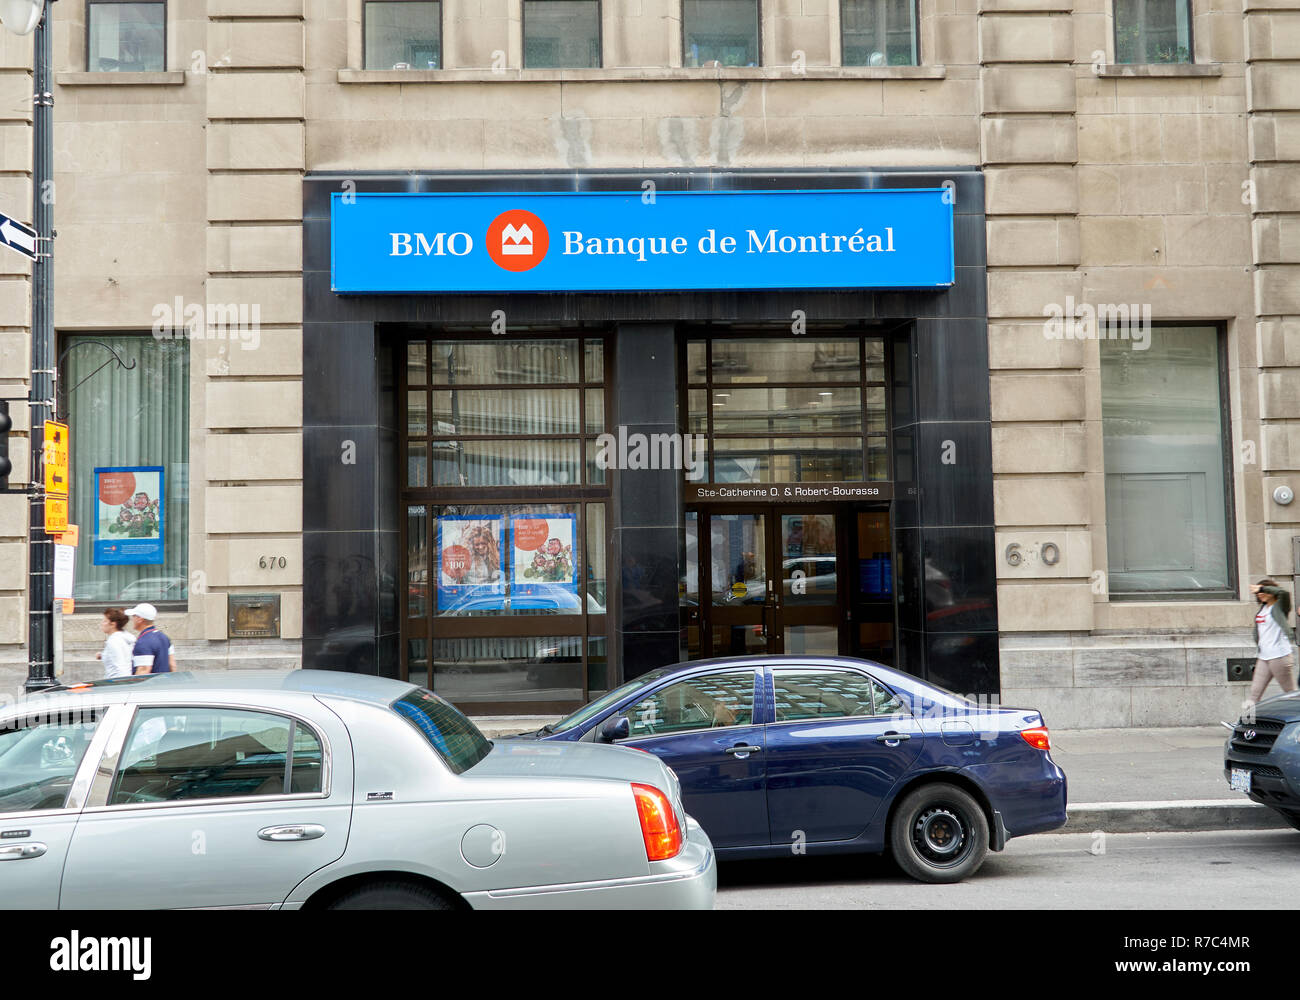 MONTREAL, Canadá - 4 de octubre de 2018: Bank of Montreal rama y logotipo. Bank of Montreal - BMO , es un banco de inversión multinacional canadiense y financi Foto de stock